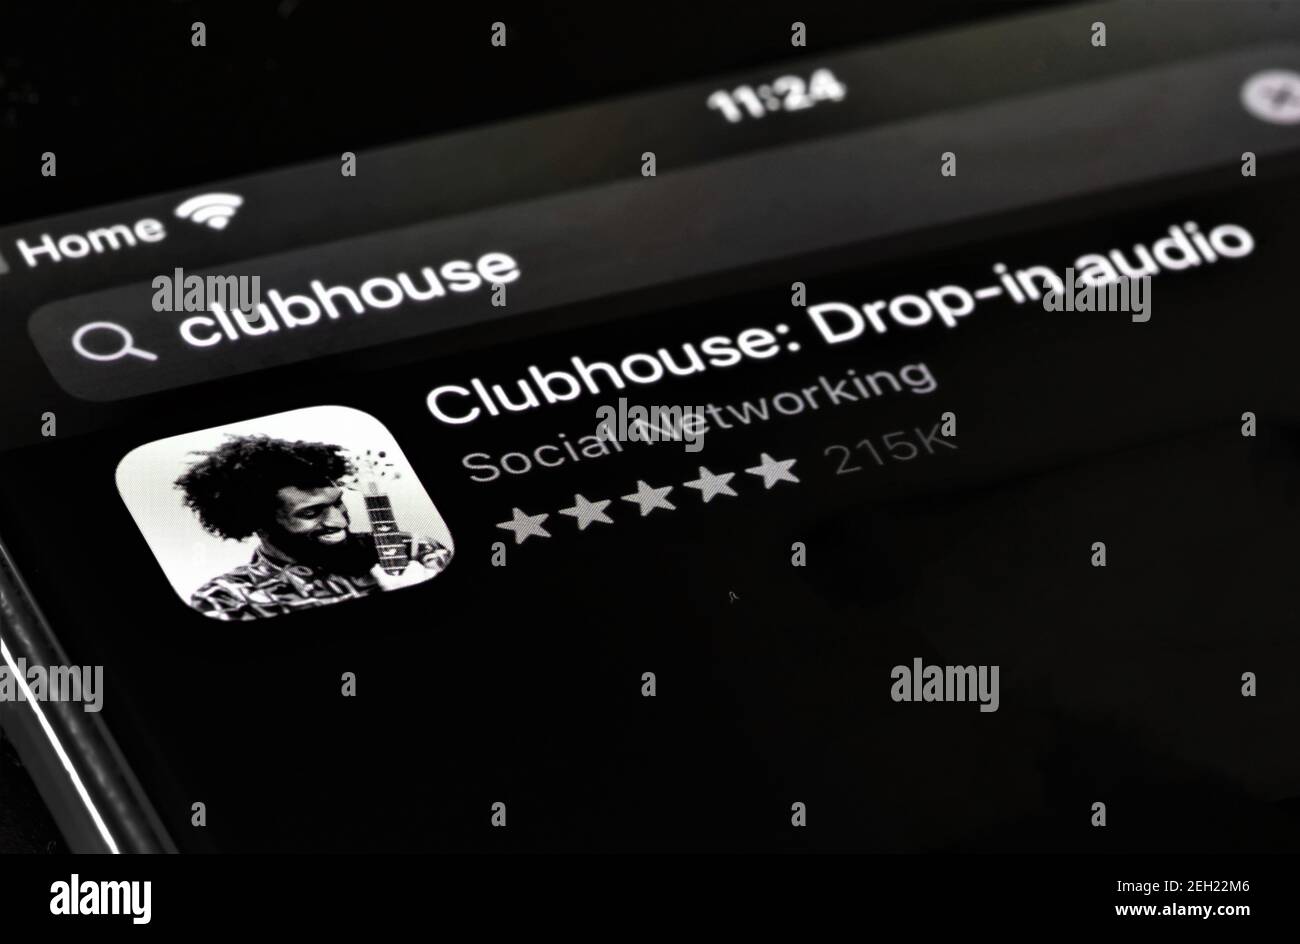 Clubhouse App ist eine neue Art von Social Network auf der Basis von Sprache, wo Menschen auf der ganzen Welt zusammenkommen, um zu reden, zuzuhören und voneinander zu lernen Stockfoto